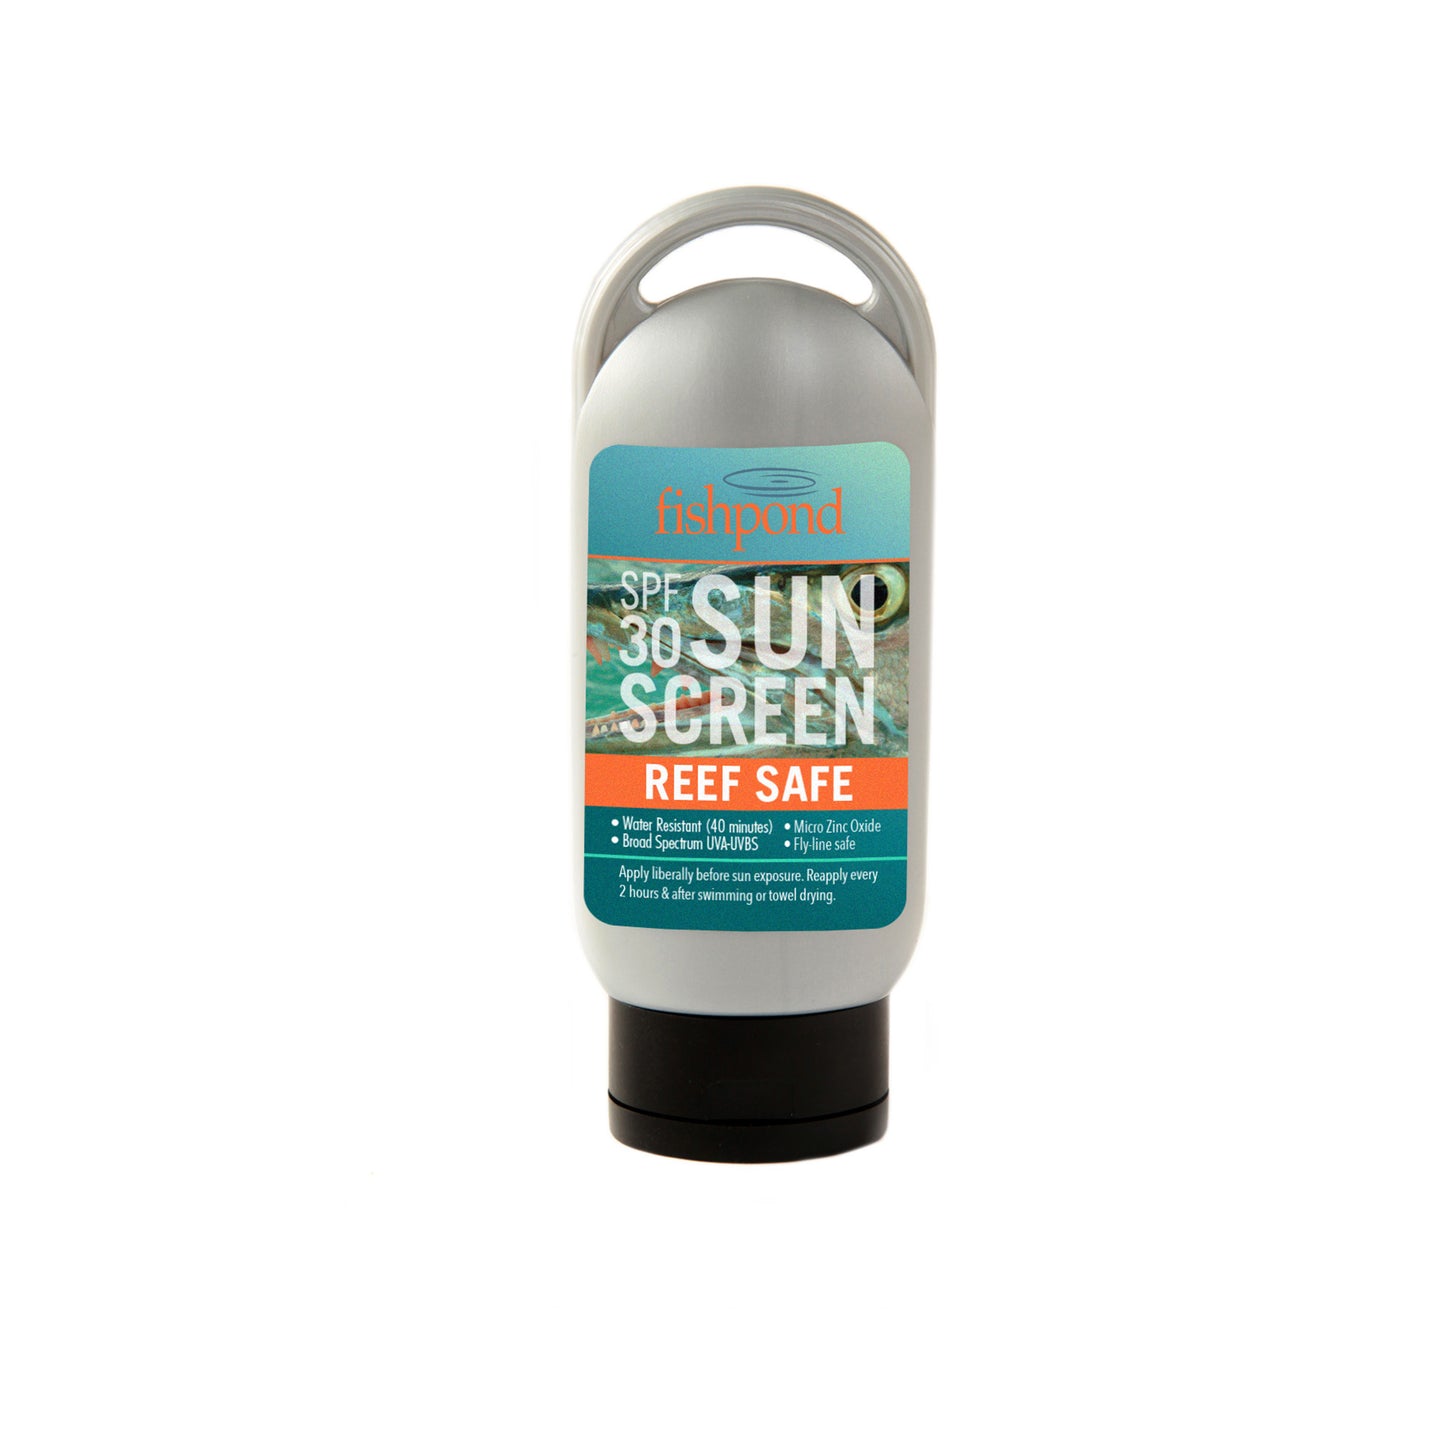 Reef Safe Sunscreen - SPF 30